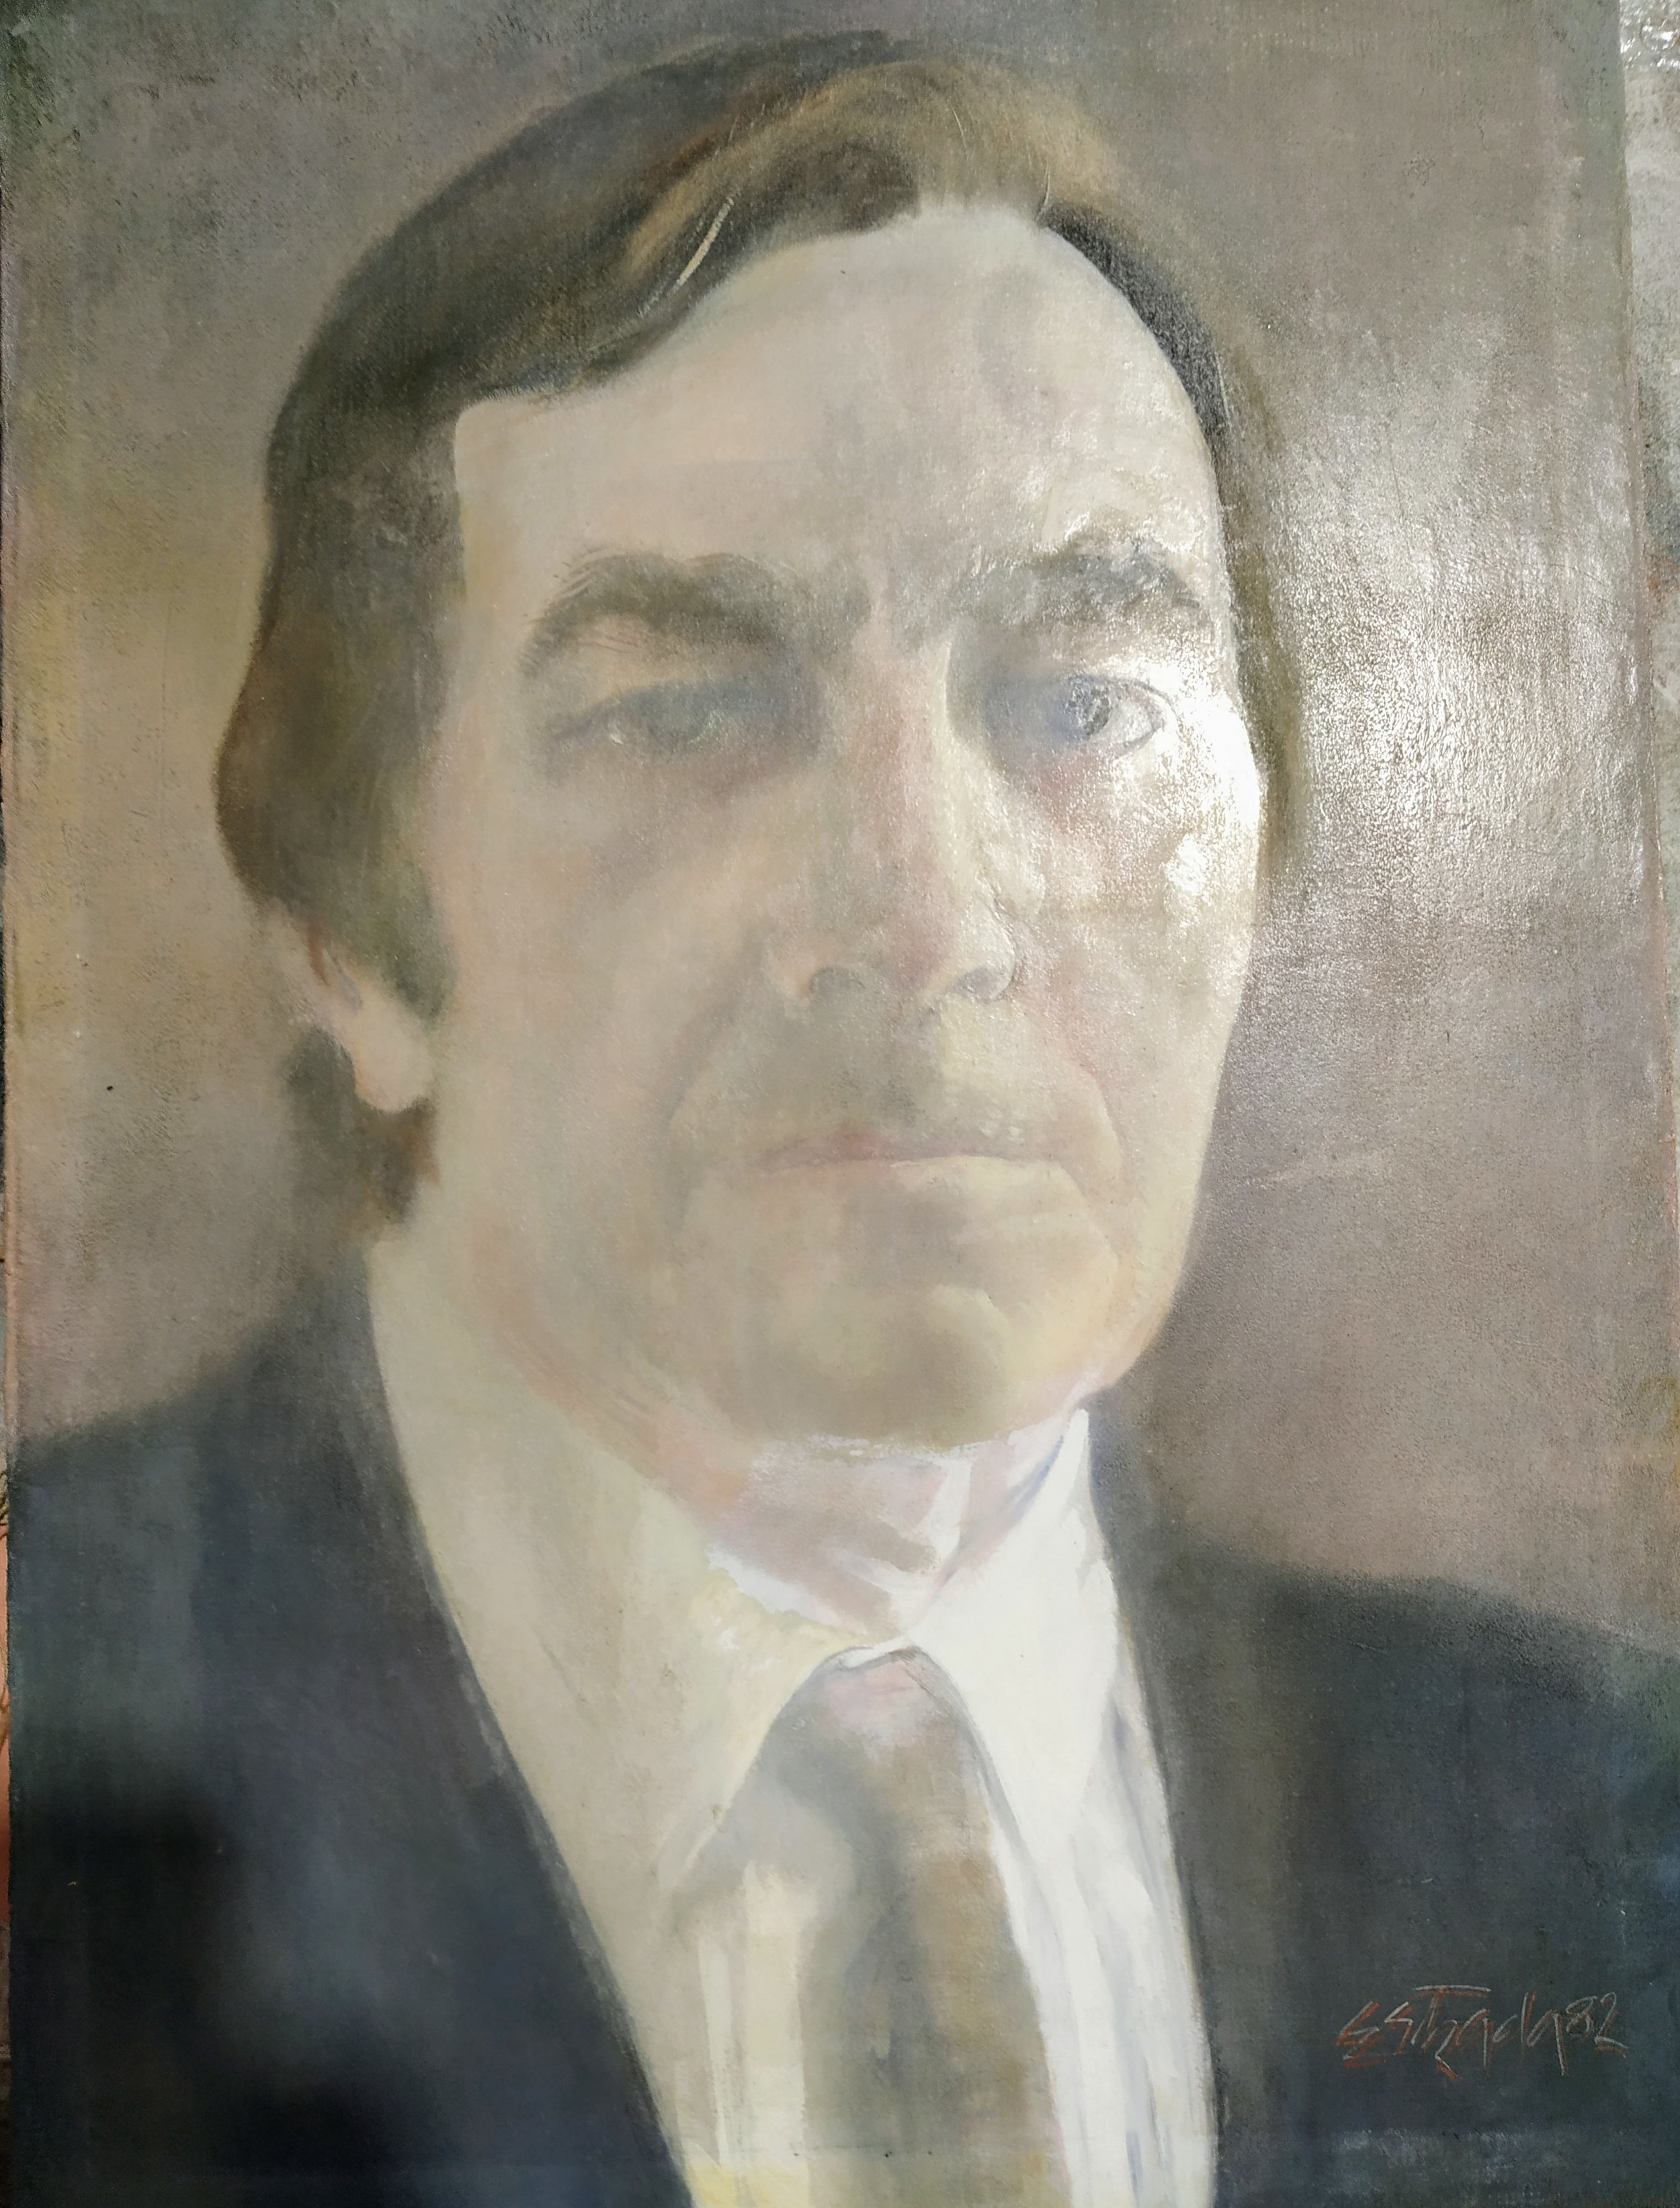 Modesto Piñeiro 1973-1977